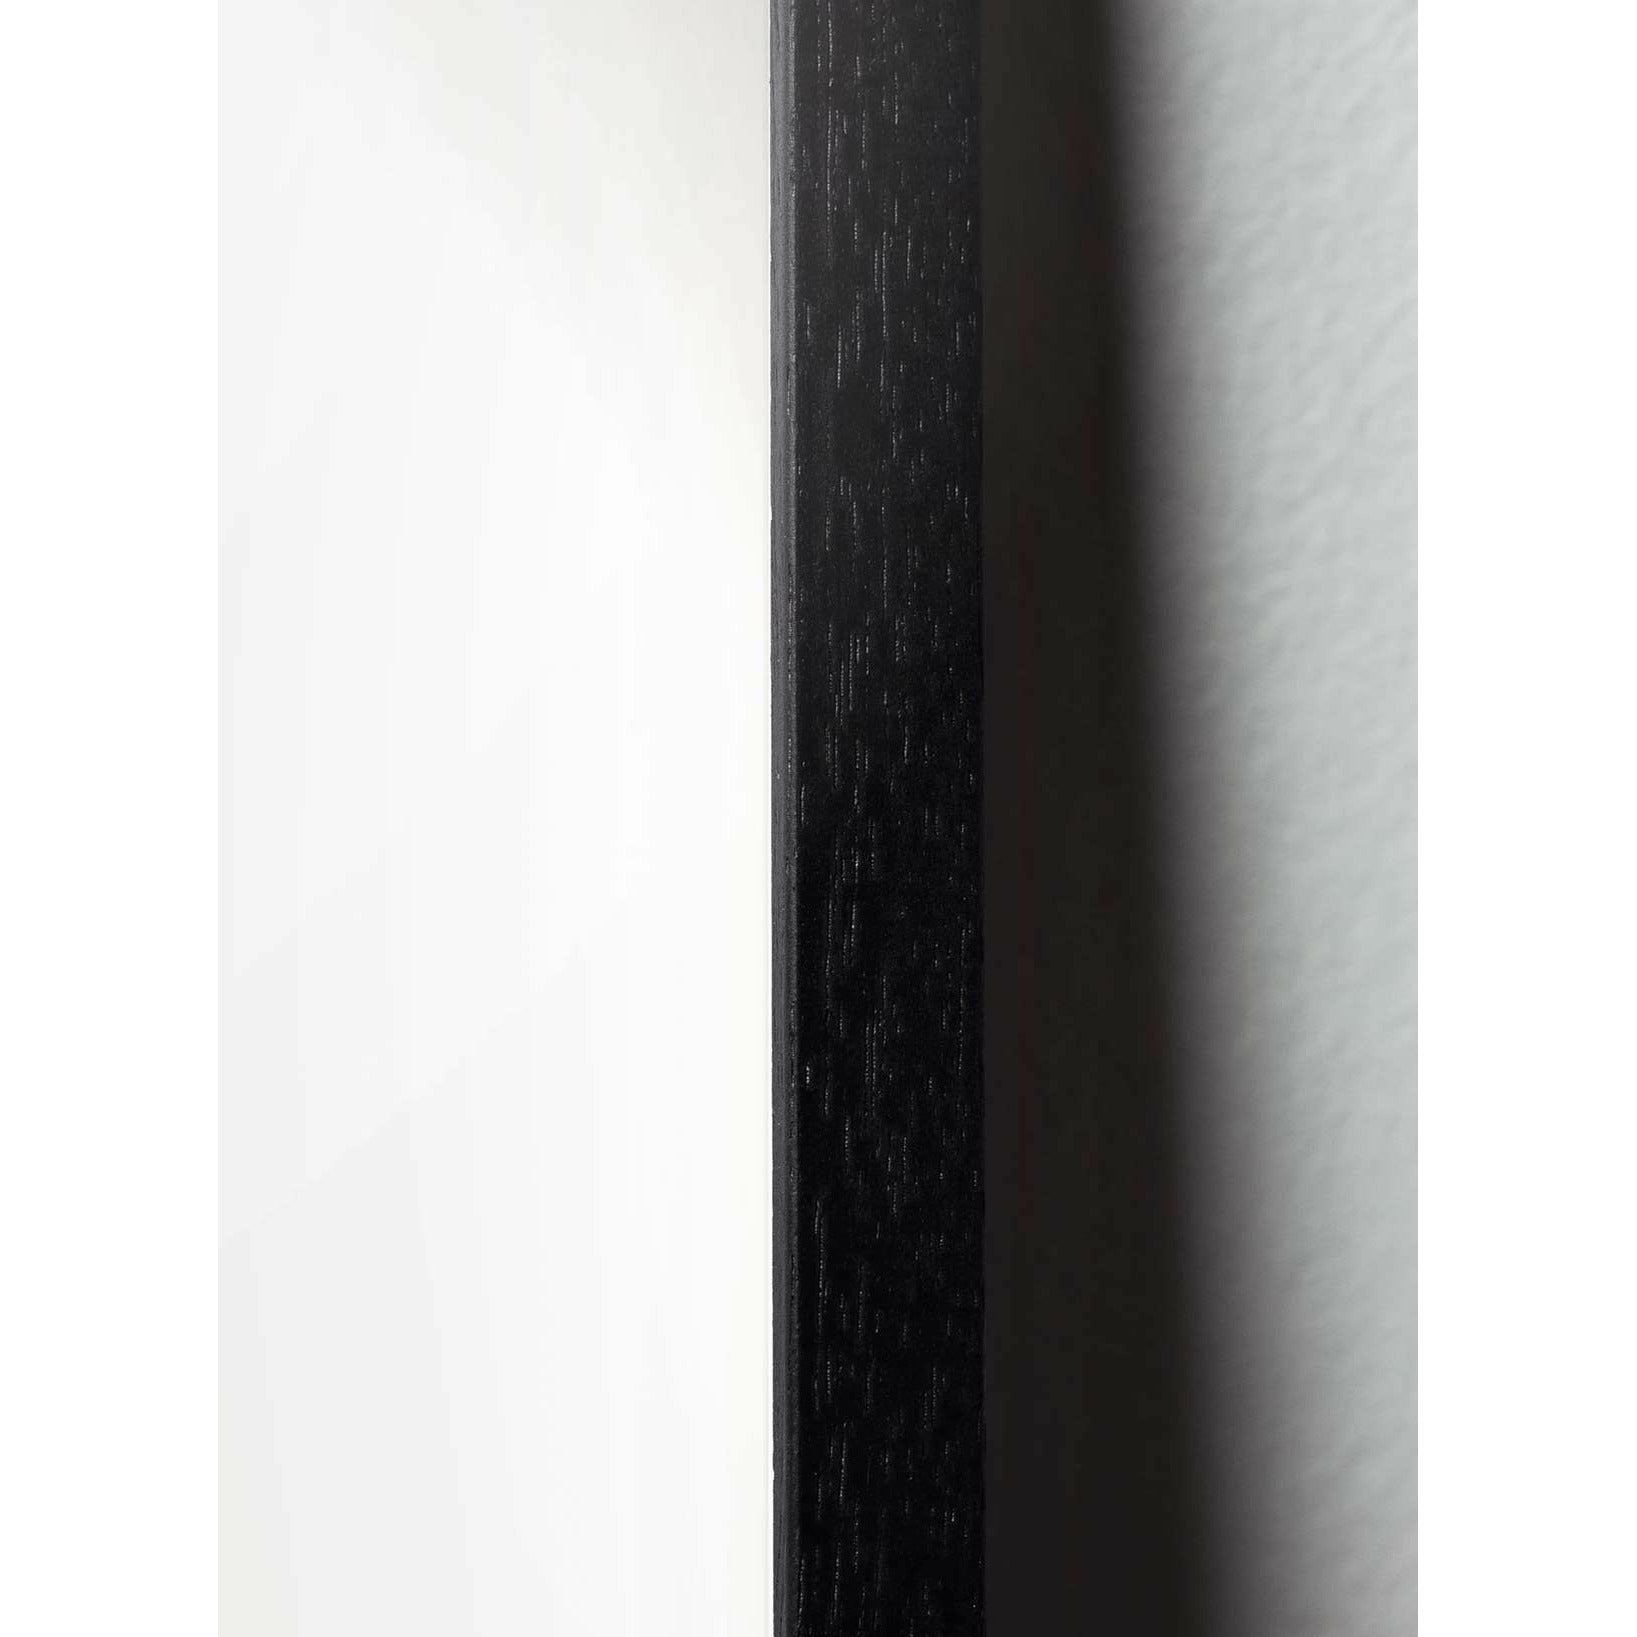 Brainchild Myrslag affisch, ram i svart -målat trä 70x100 cm, vit bakgrund